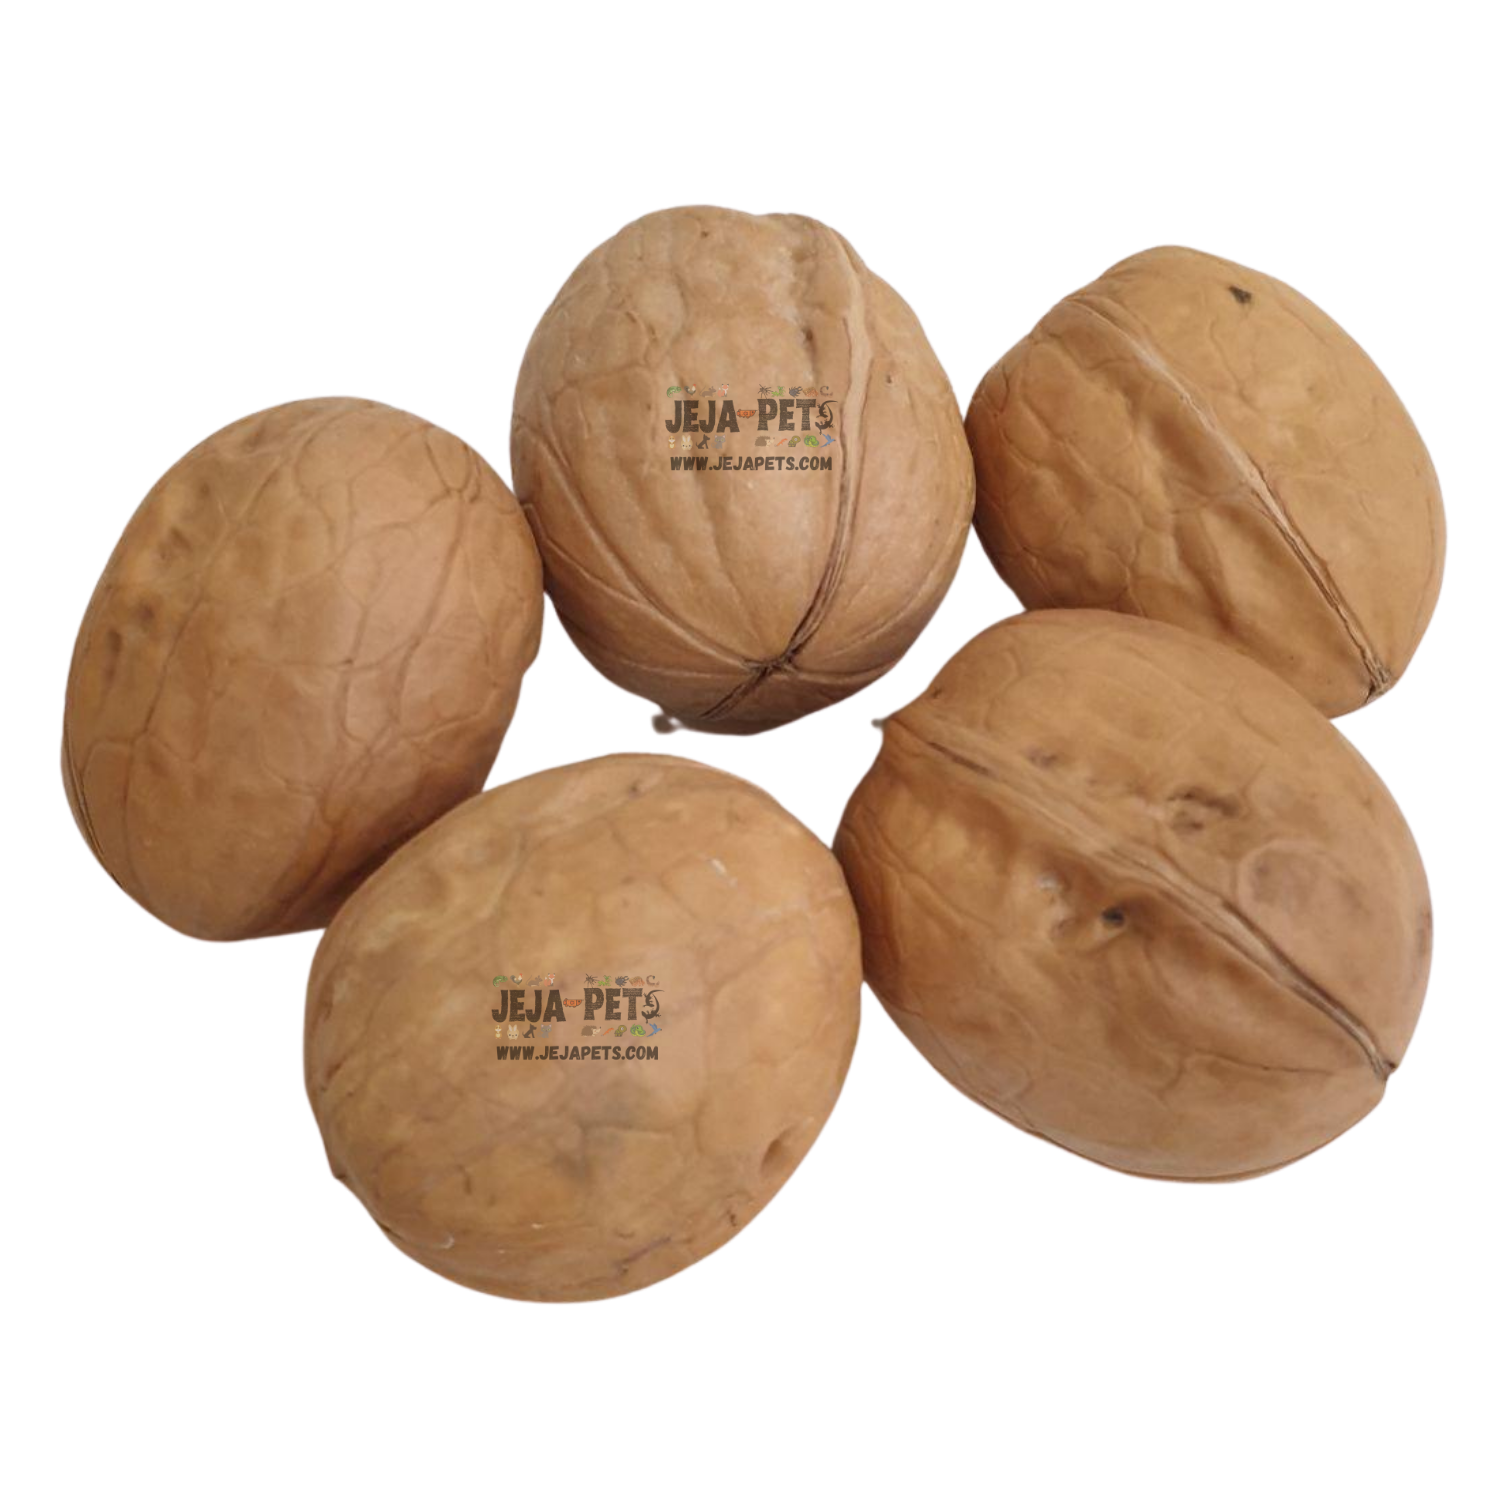 [SAMPLE] Jeja Pets Raw Shelled Walnuts - 3 pieces